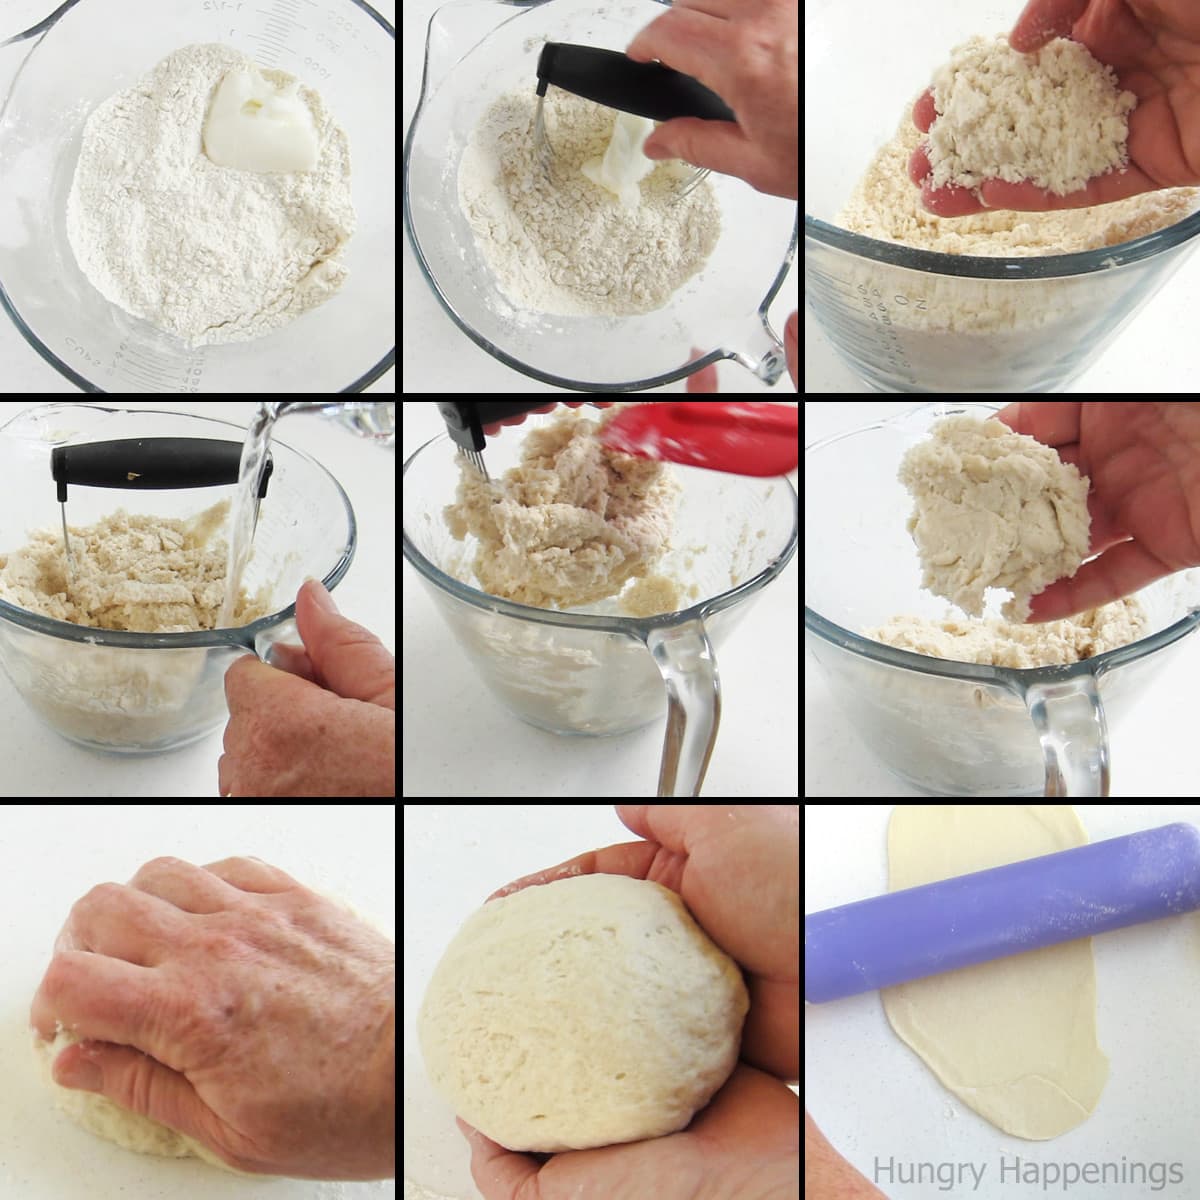 making homemade tortilla dough.